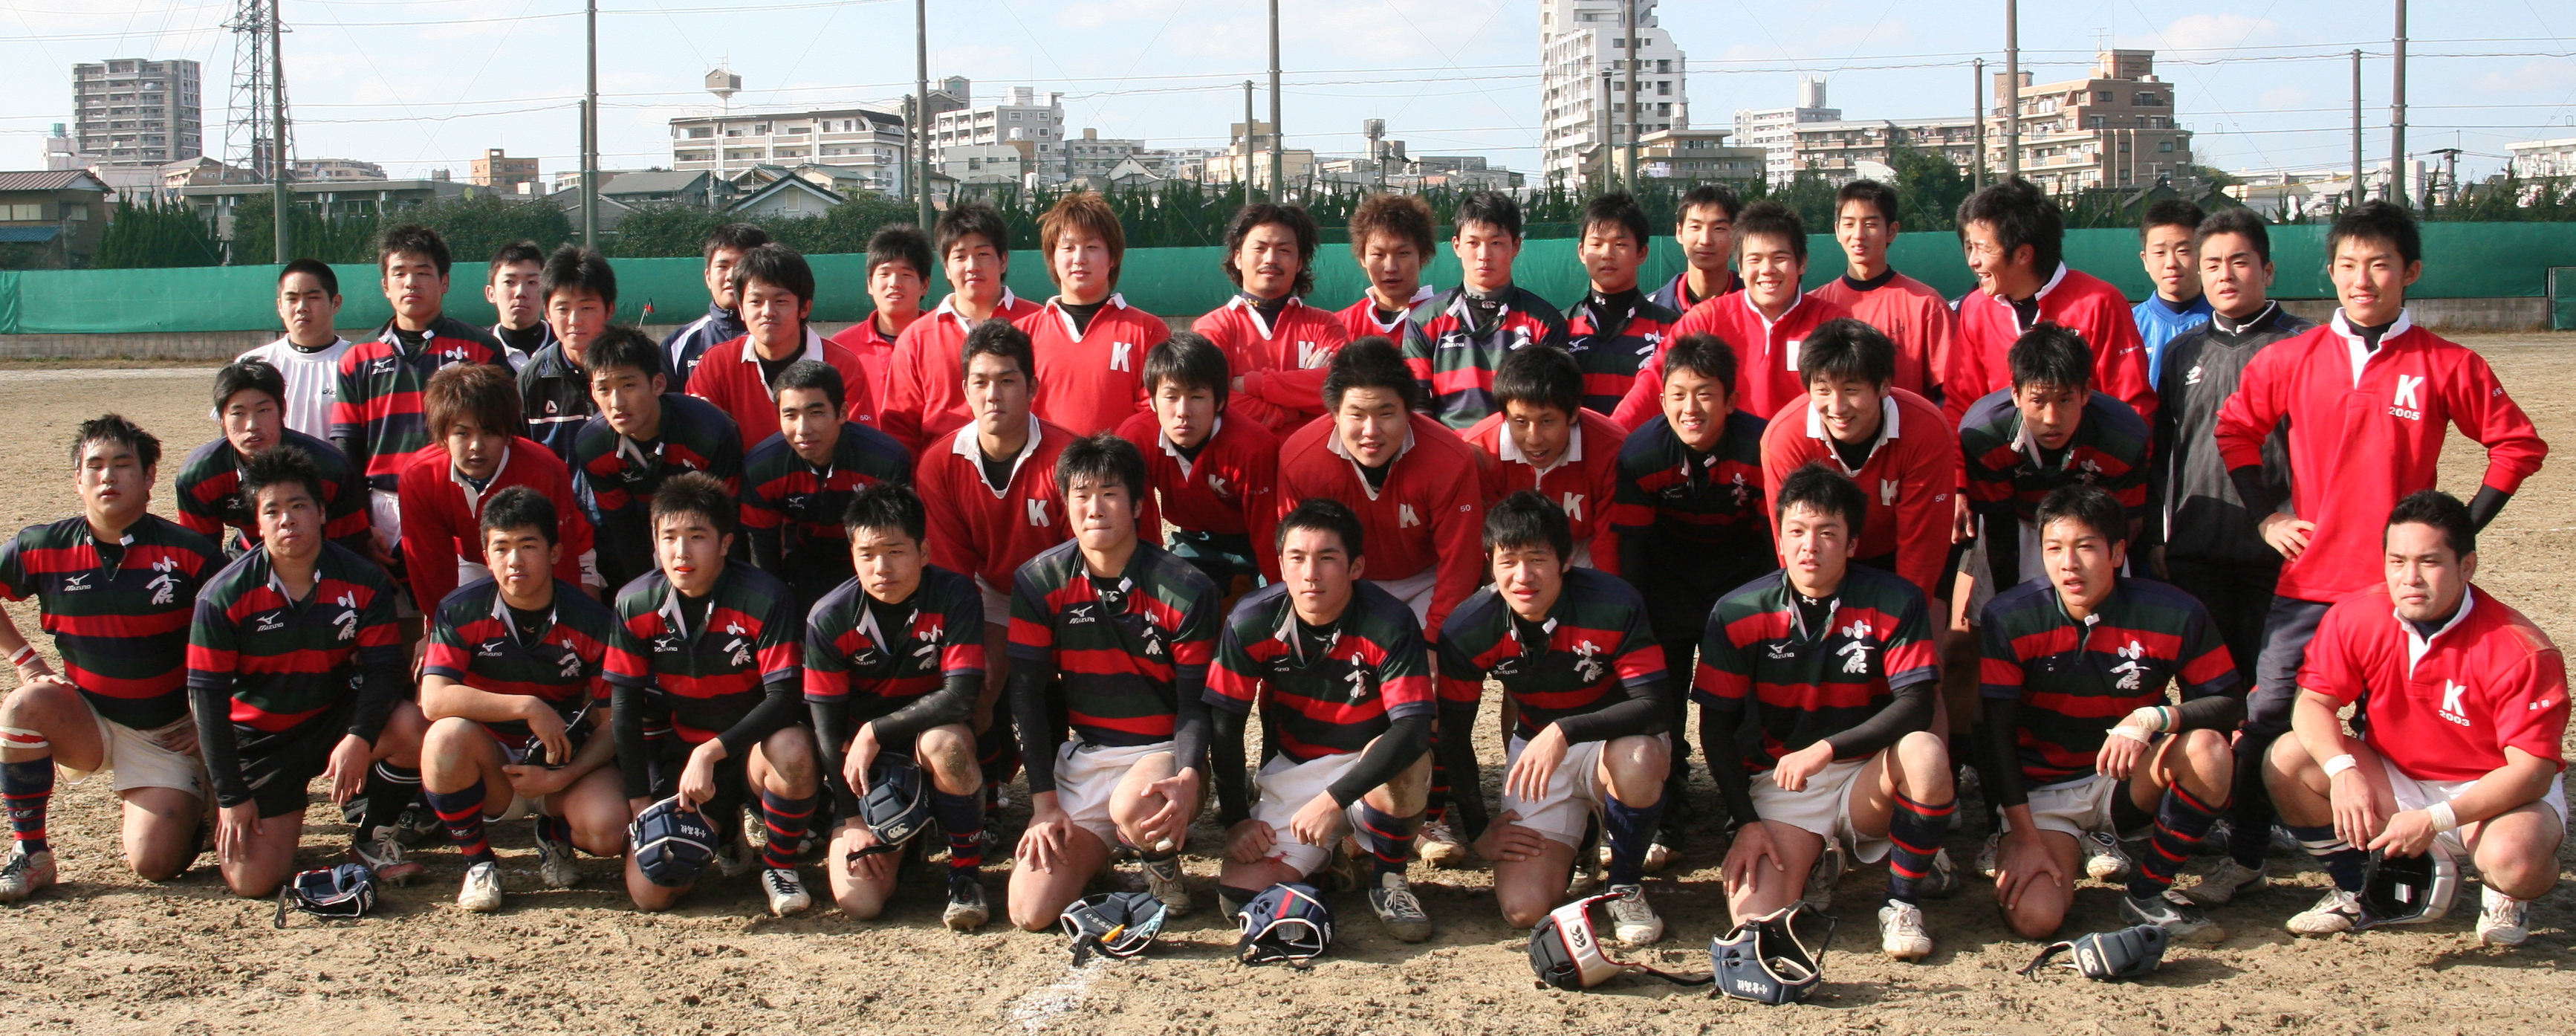 http://kokura-rugby.sakura.ne.jp/2010.3.1%E3%83%BBOB%E6%88%A6%E9%9B%86%E5%90%88.JPG